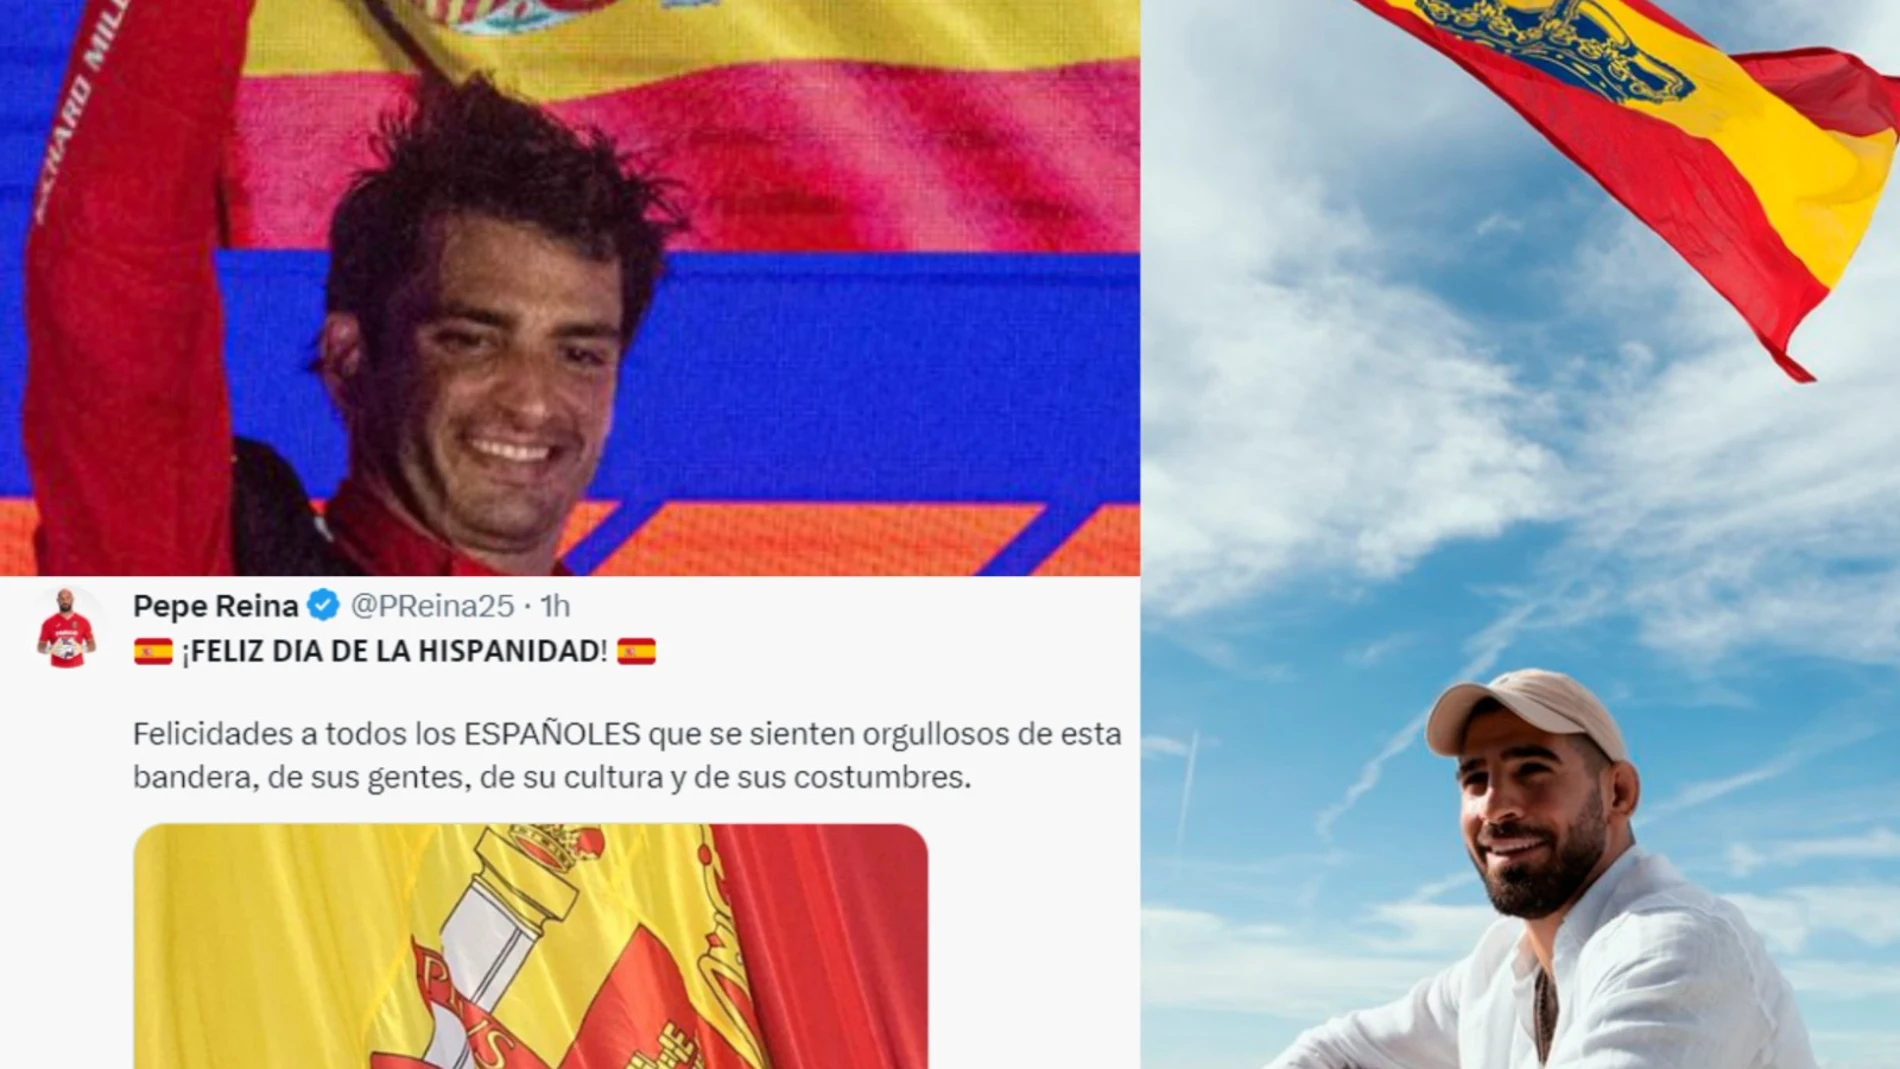 De Pepe Reina a Carlos Sainz: los deportistas presumen de "orgullo español"